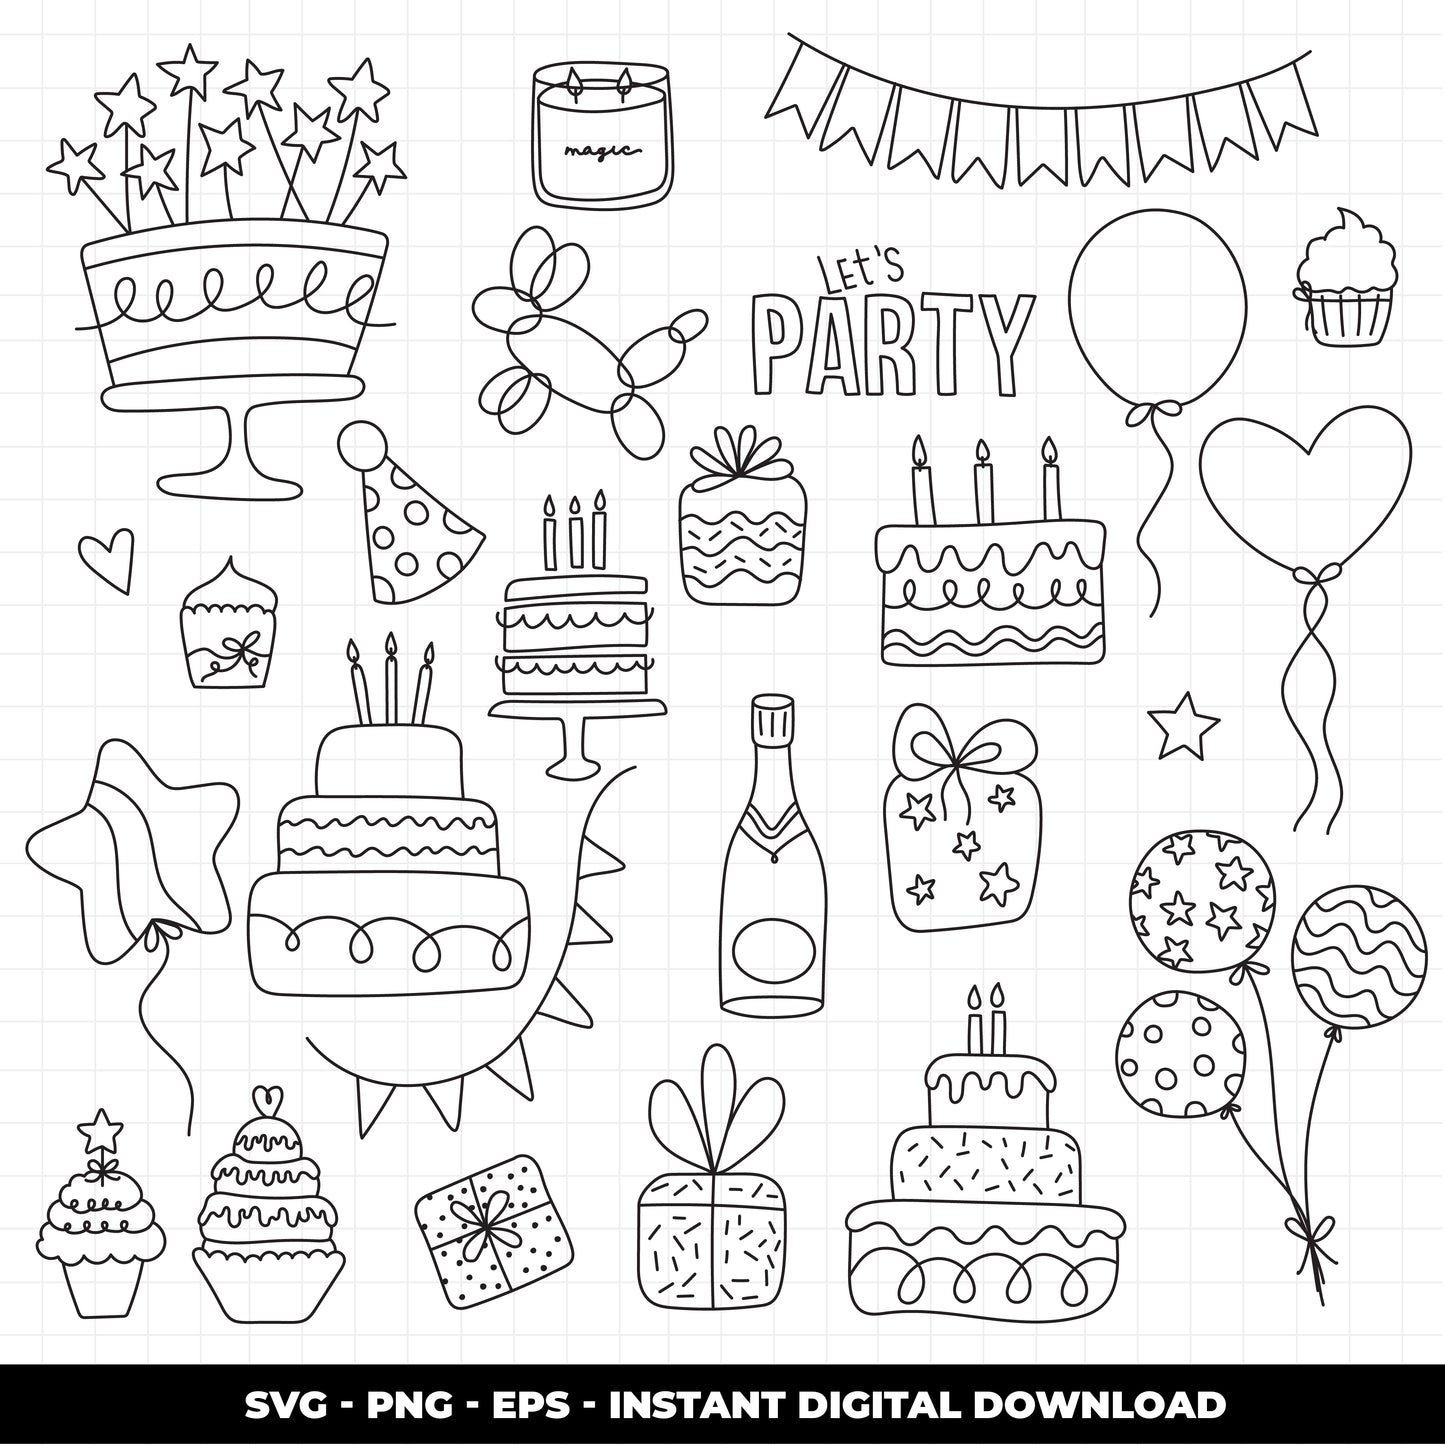 COD928 Happy birthday svg, birthday clipart, cake svg, birthday vector, party svg